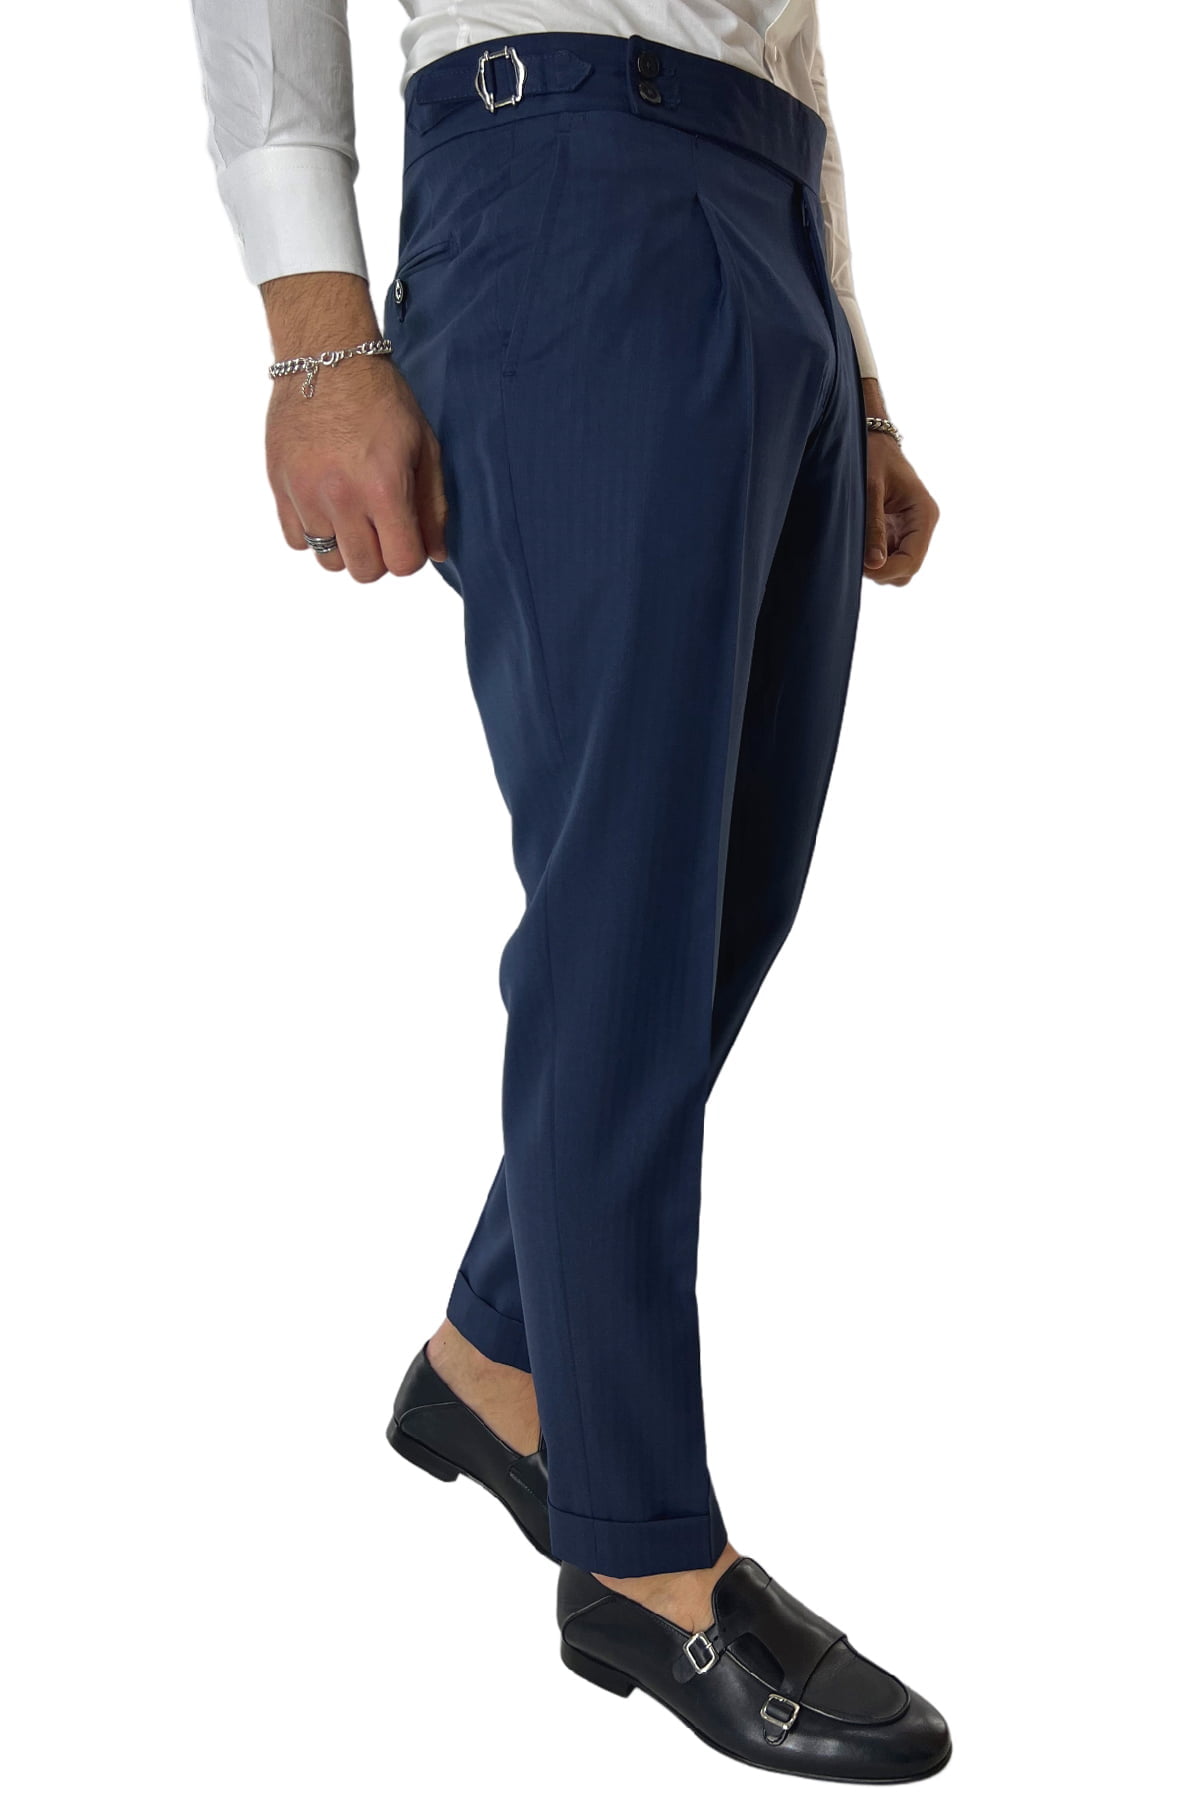 Pantalone uomo blu spigato in fresco lana 120's Holland & Sherry vita alta con pinces fibbie laterali e risvolto 4cm